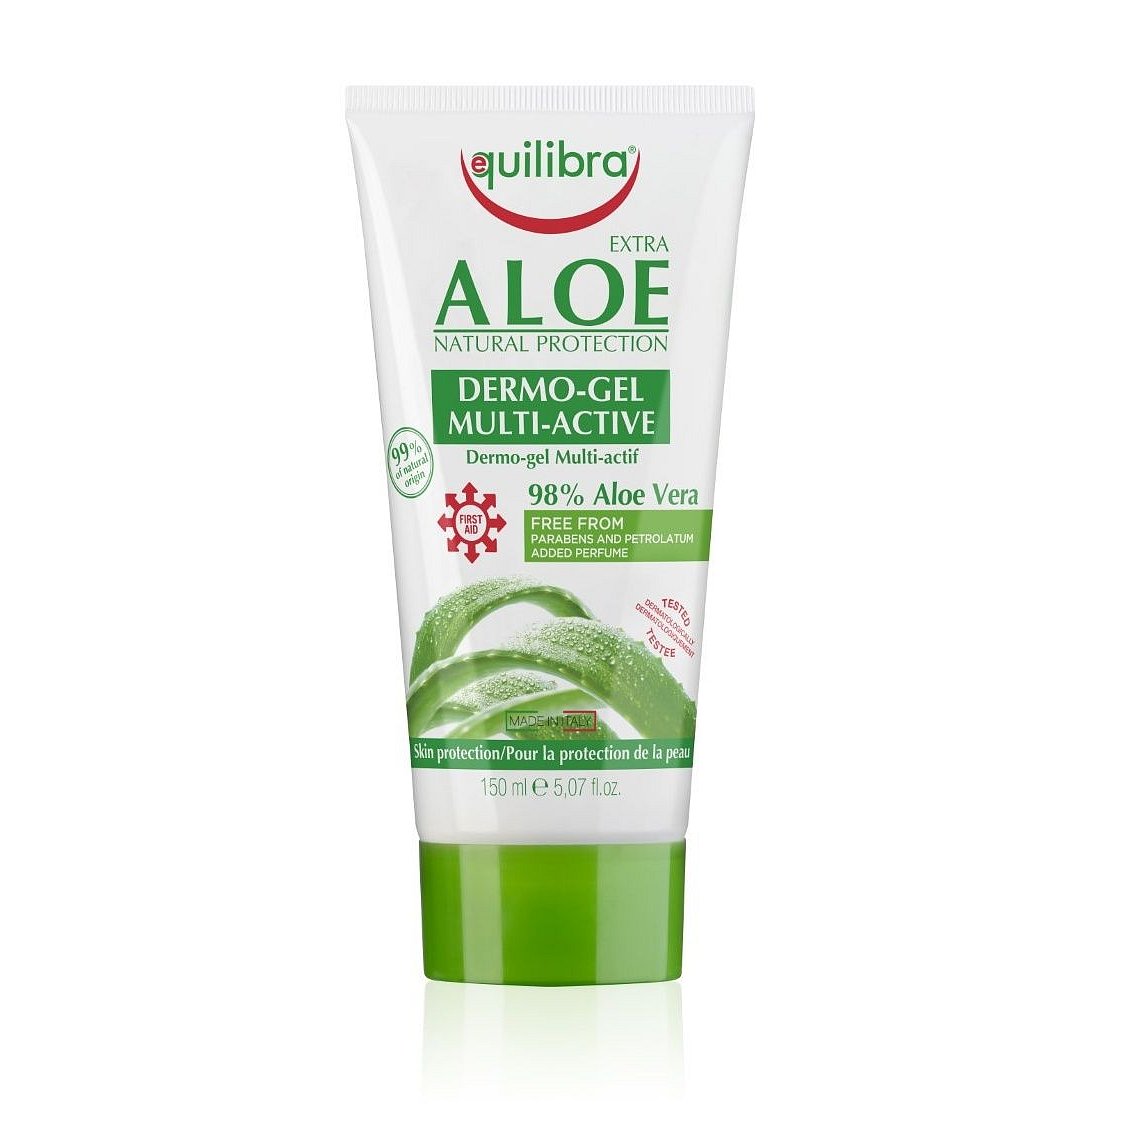 Equilibra Extra Aloe Dermo Gel Multi Actif 150 ml